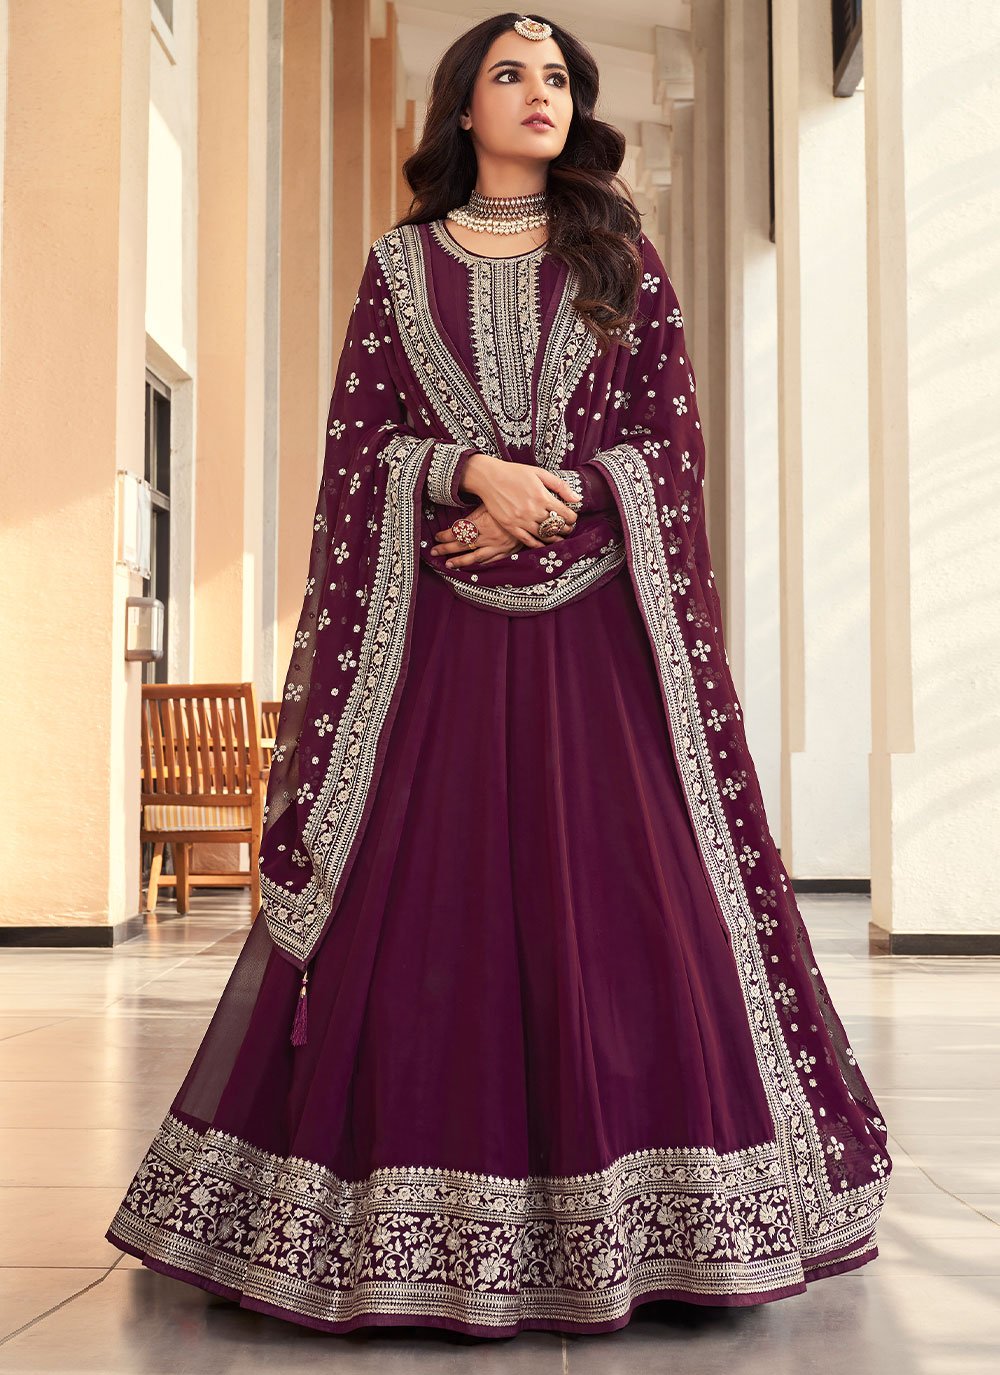  Jasmin Bhasin Embroidered Purple Anarkali Salwar Suit